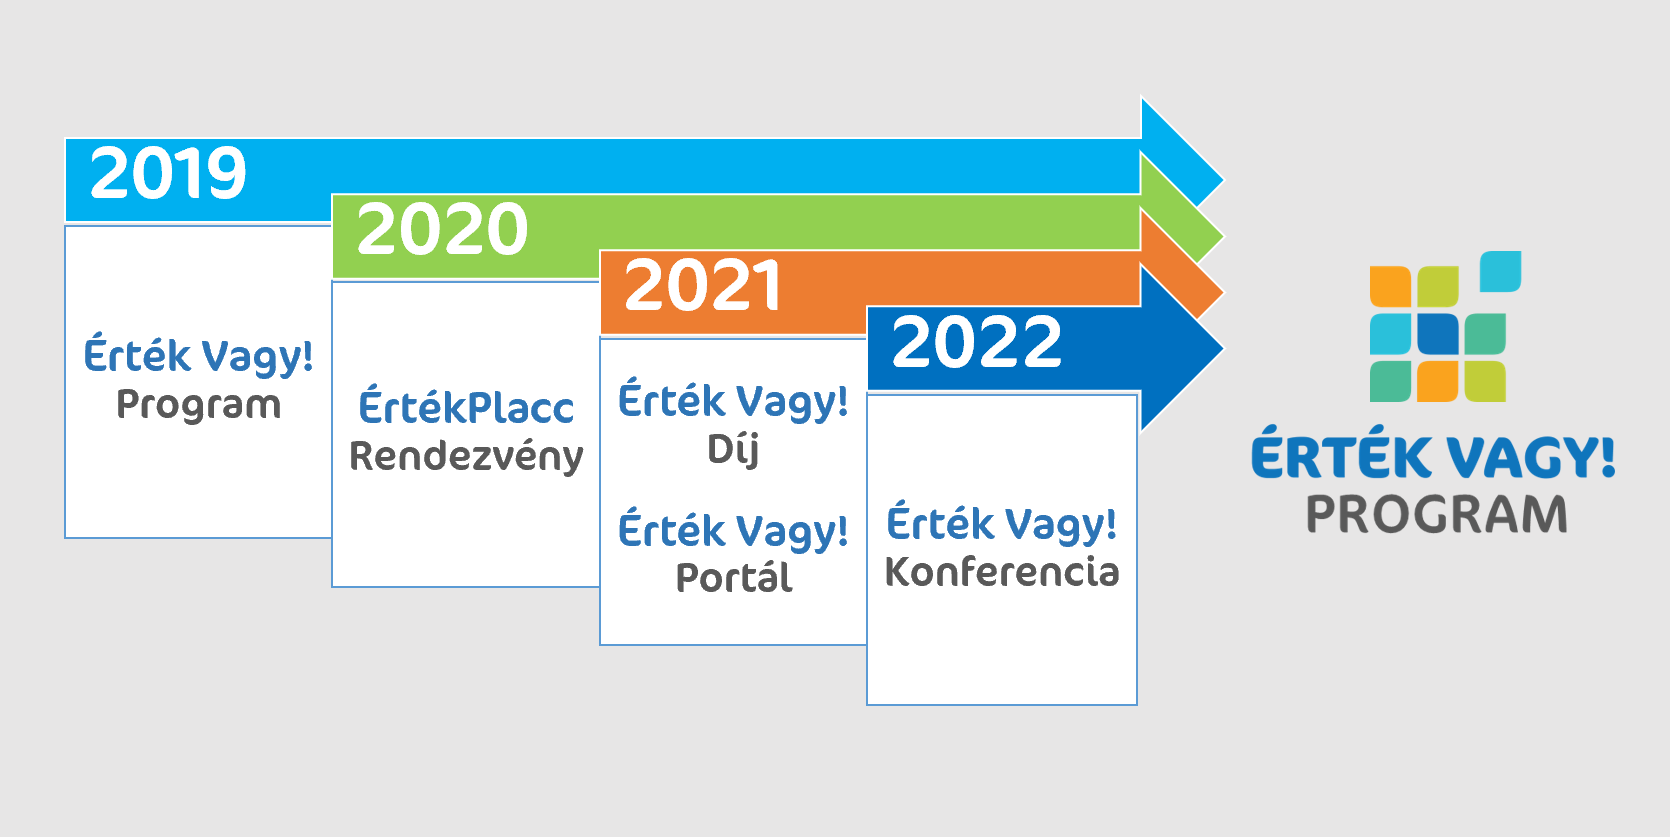 Az EMMI SZOCÁT által 2019-ben indított Érték Vagy! Program főbb mérföldkövei idővonalon: 2020 - ÉrtékPlacc, 2021 - Érték Vagy! Díj, 2022 - Érték Vagy! Konferencia